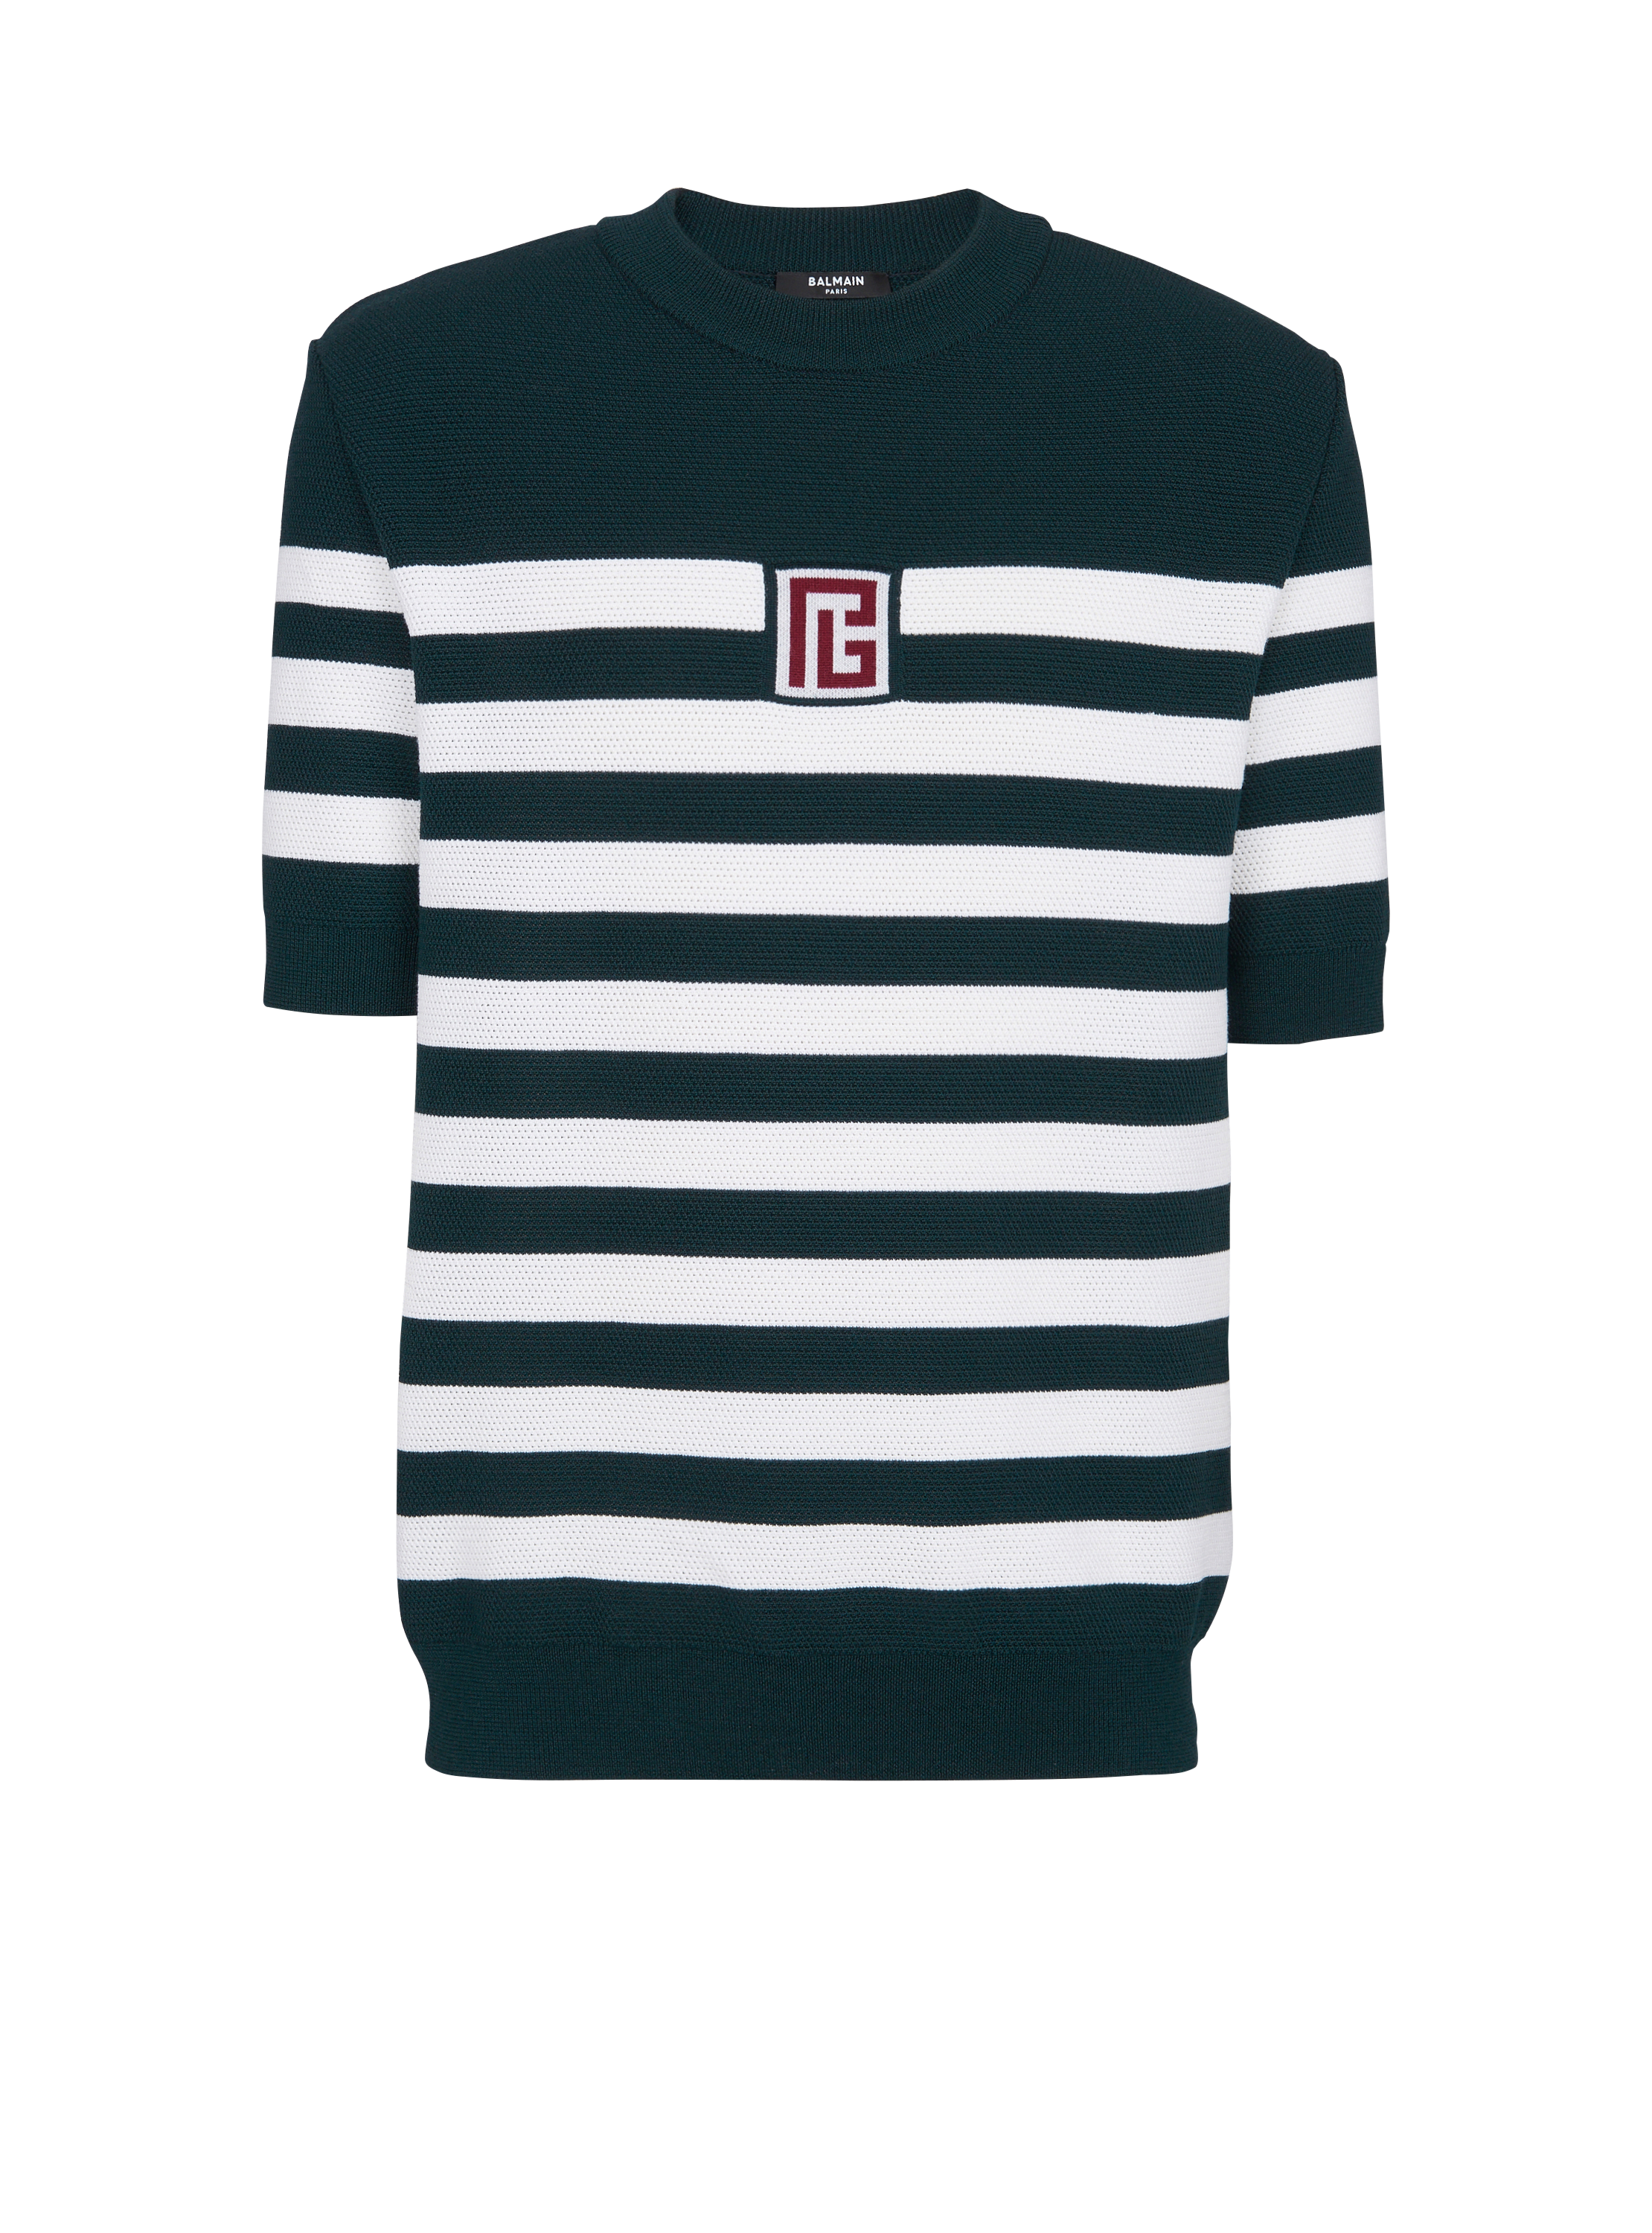 Camiseta PB Stripe, verde, hi-res